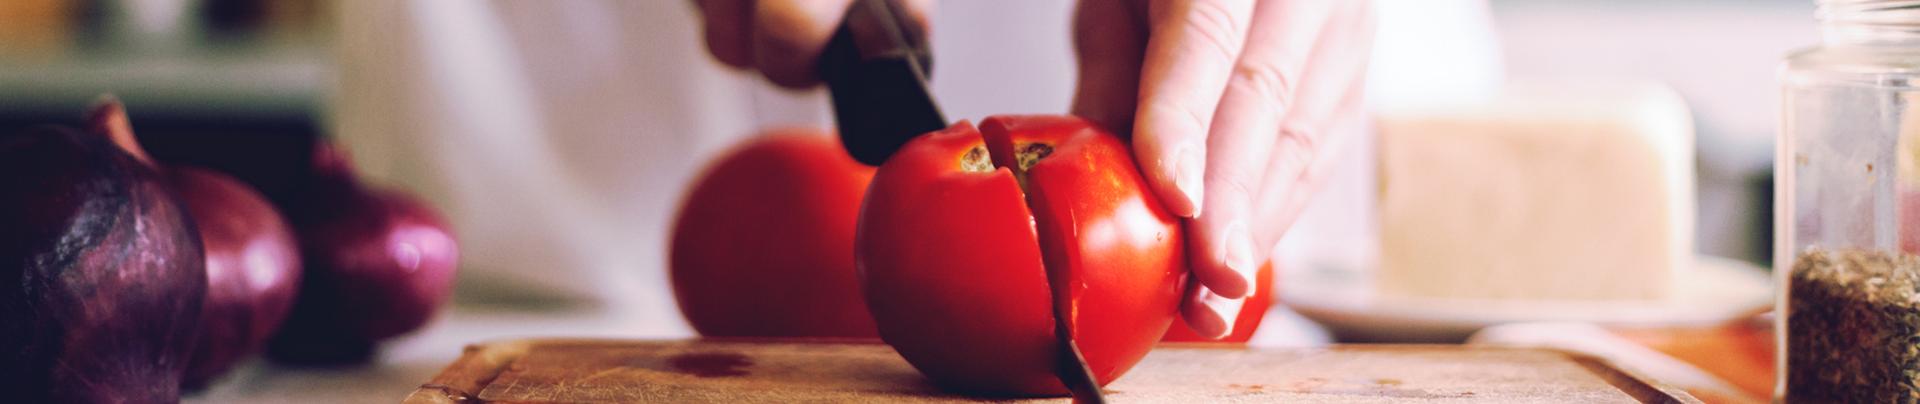 Mains de femme coupant une tomate